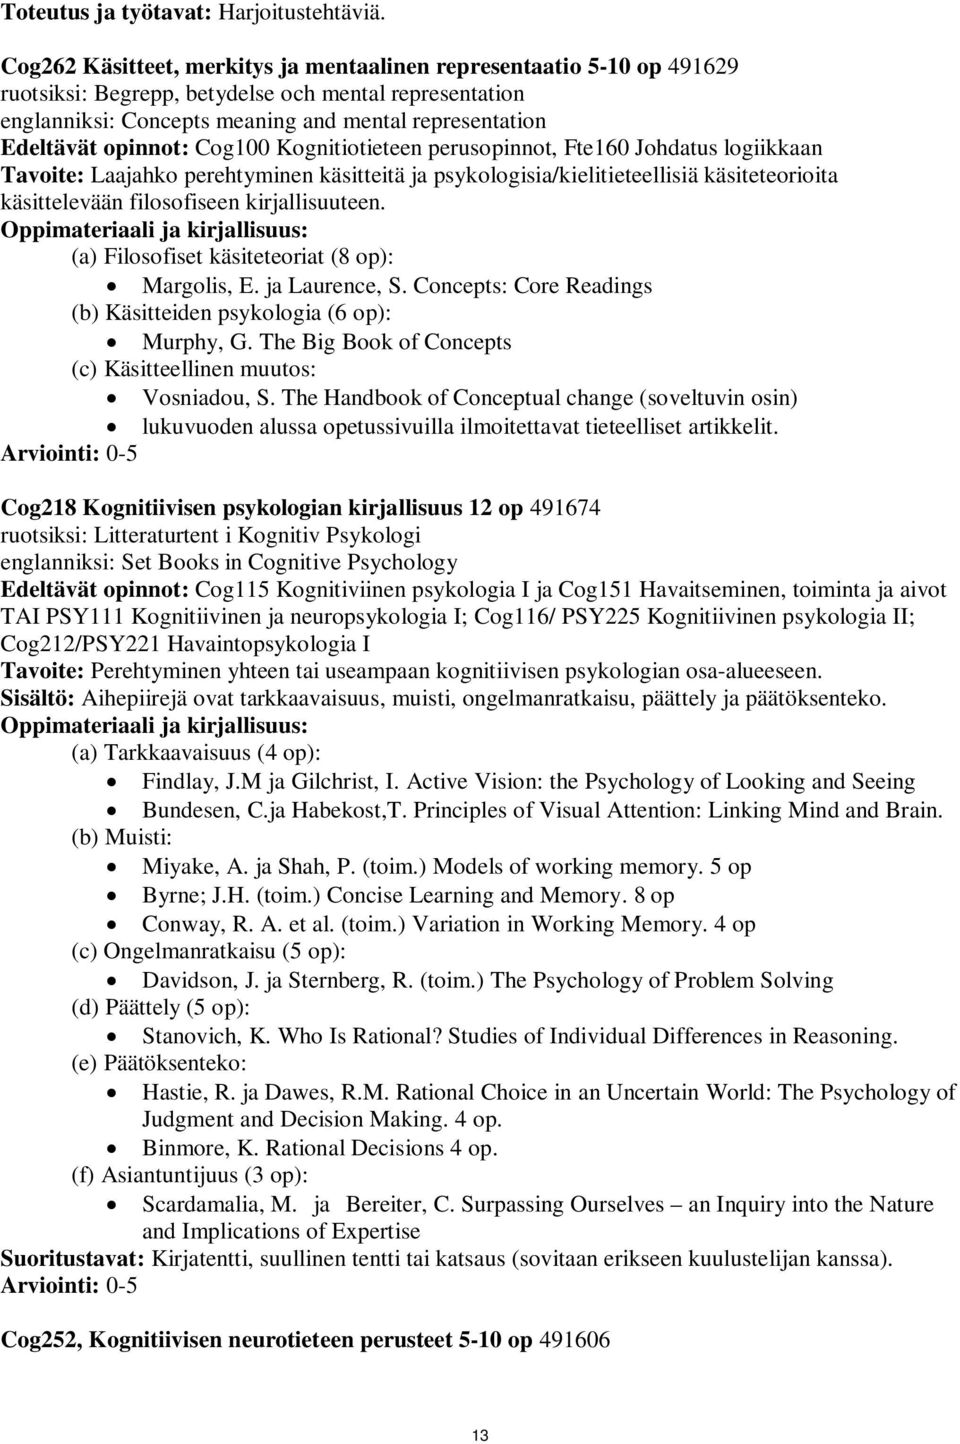 opinnot: Cog100 Kognitiotieteen perusopinnot, Fte160 Johdatus logiikkaan Tavoite: Laajahko perehtyminen käsitteitä ja psykologisia/kielitieteellisiä käsiteteorioita käsittelevään filosofiseen